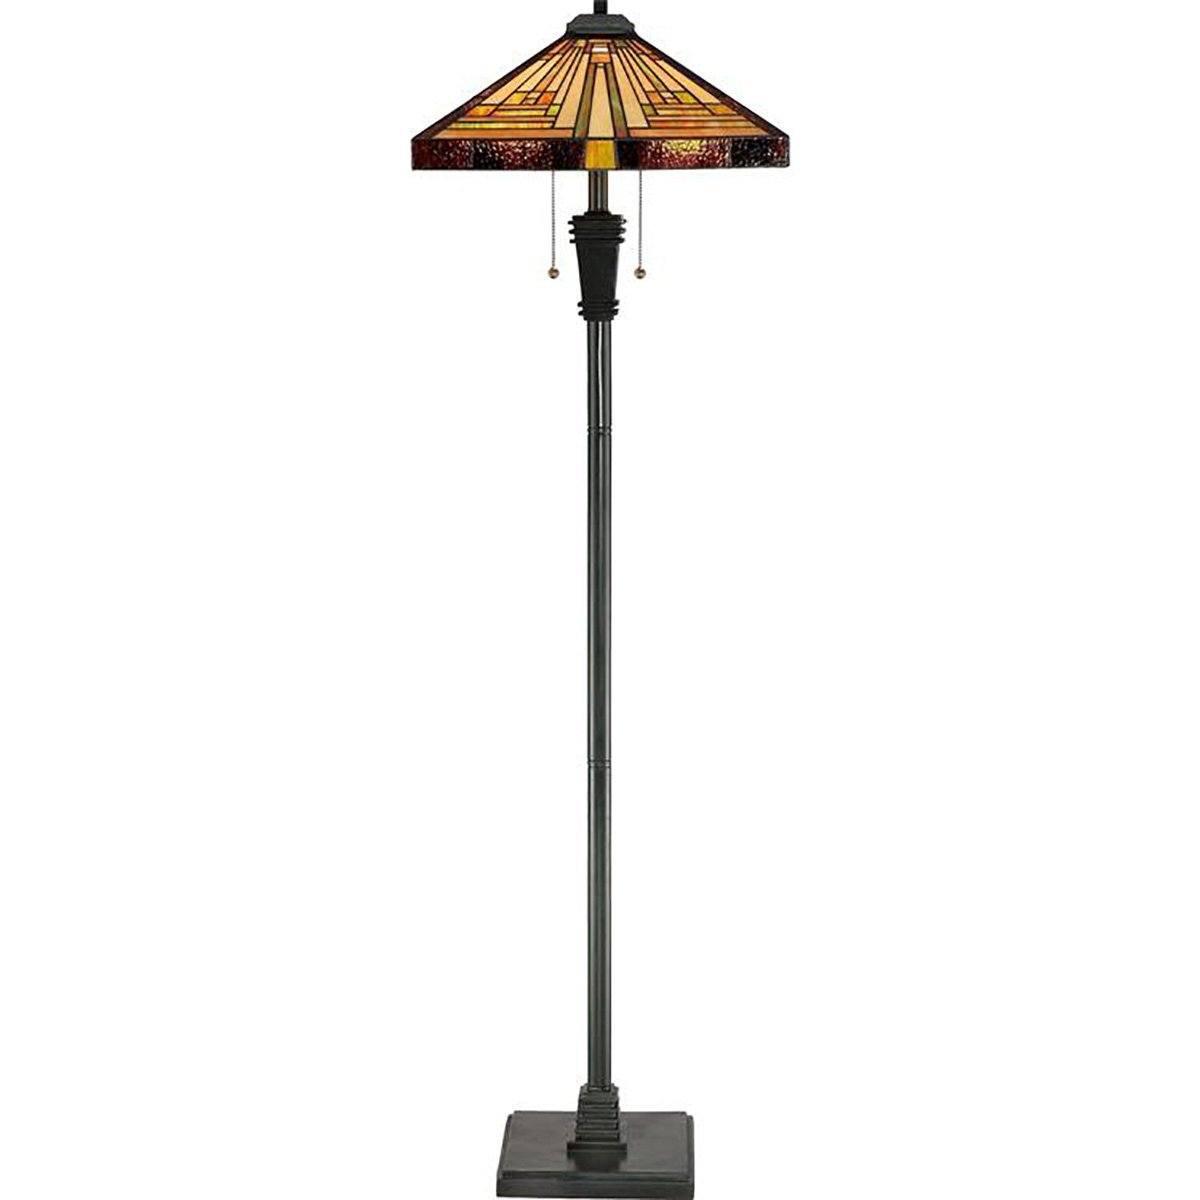 Stephen Bronze Floor Lamp Lamps Quoizel 